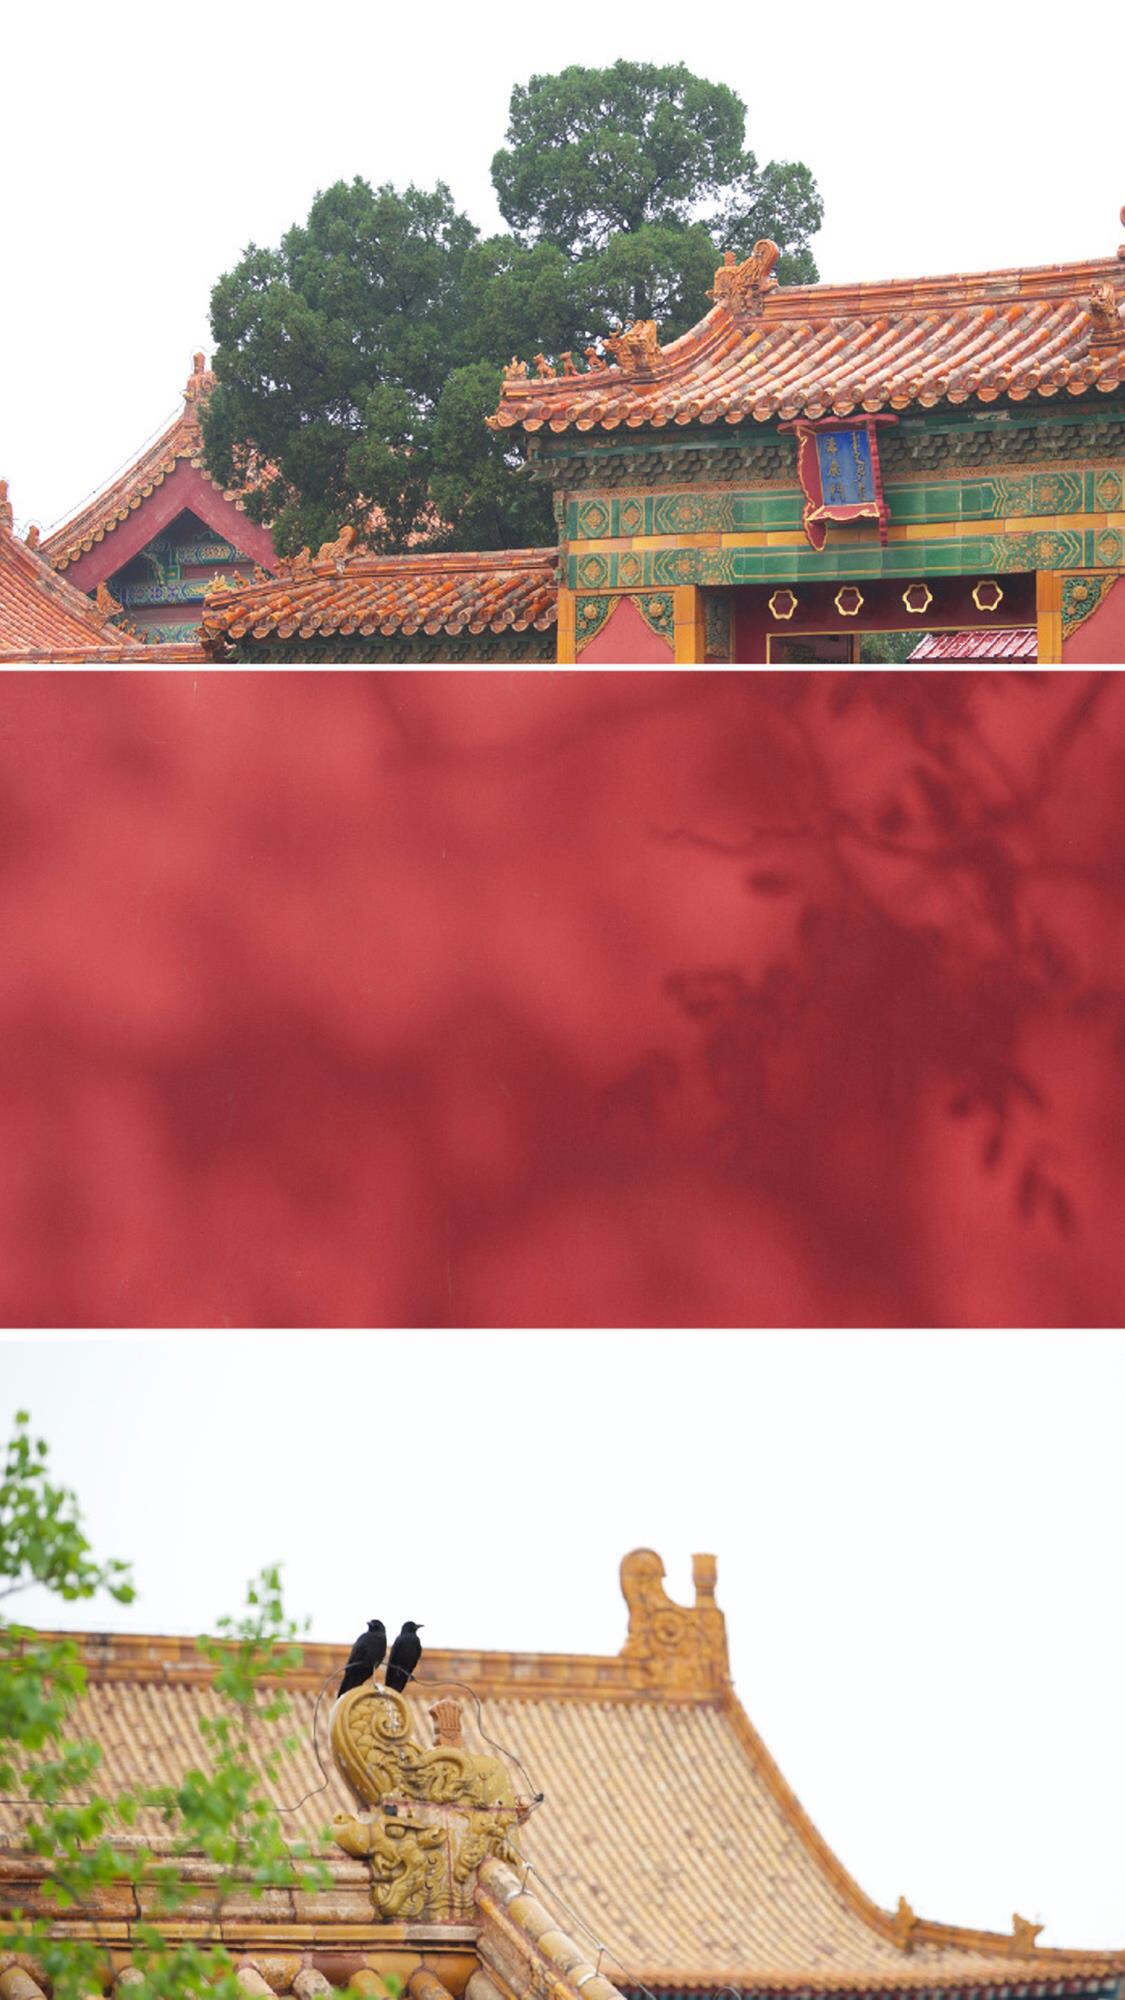 中国古建筑之美,带你领略不一样的故宫.